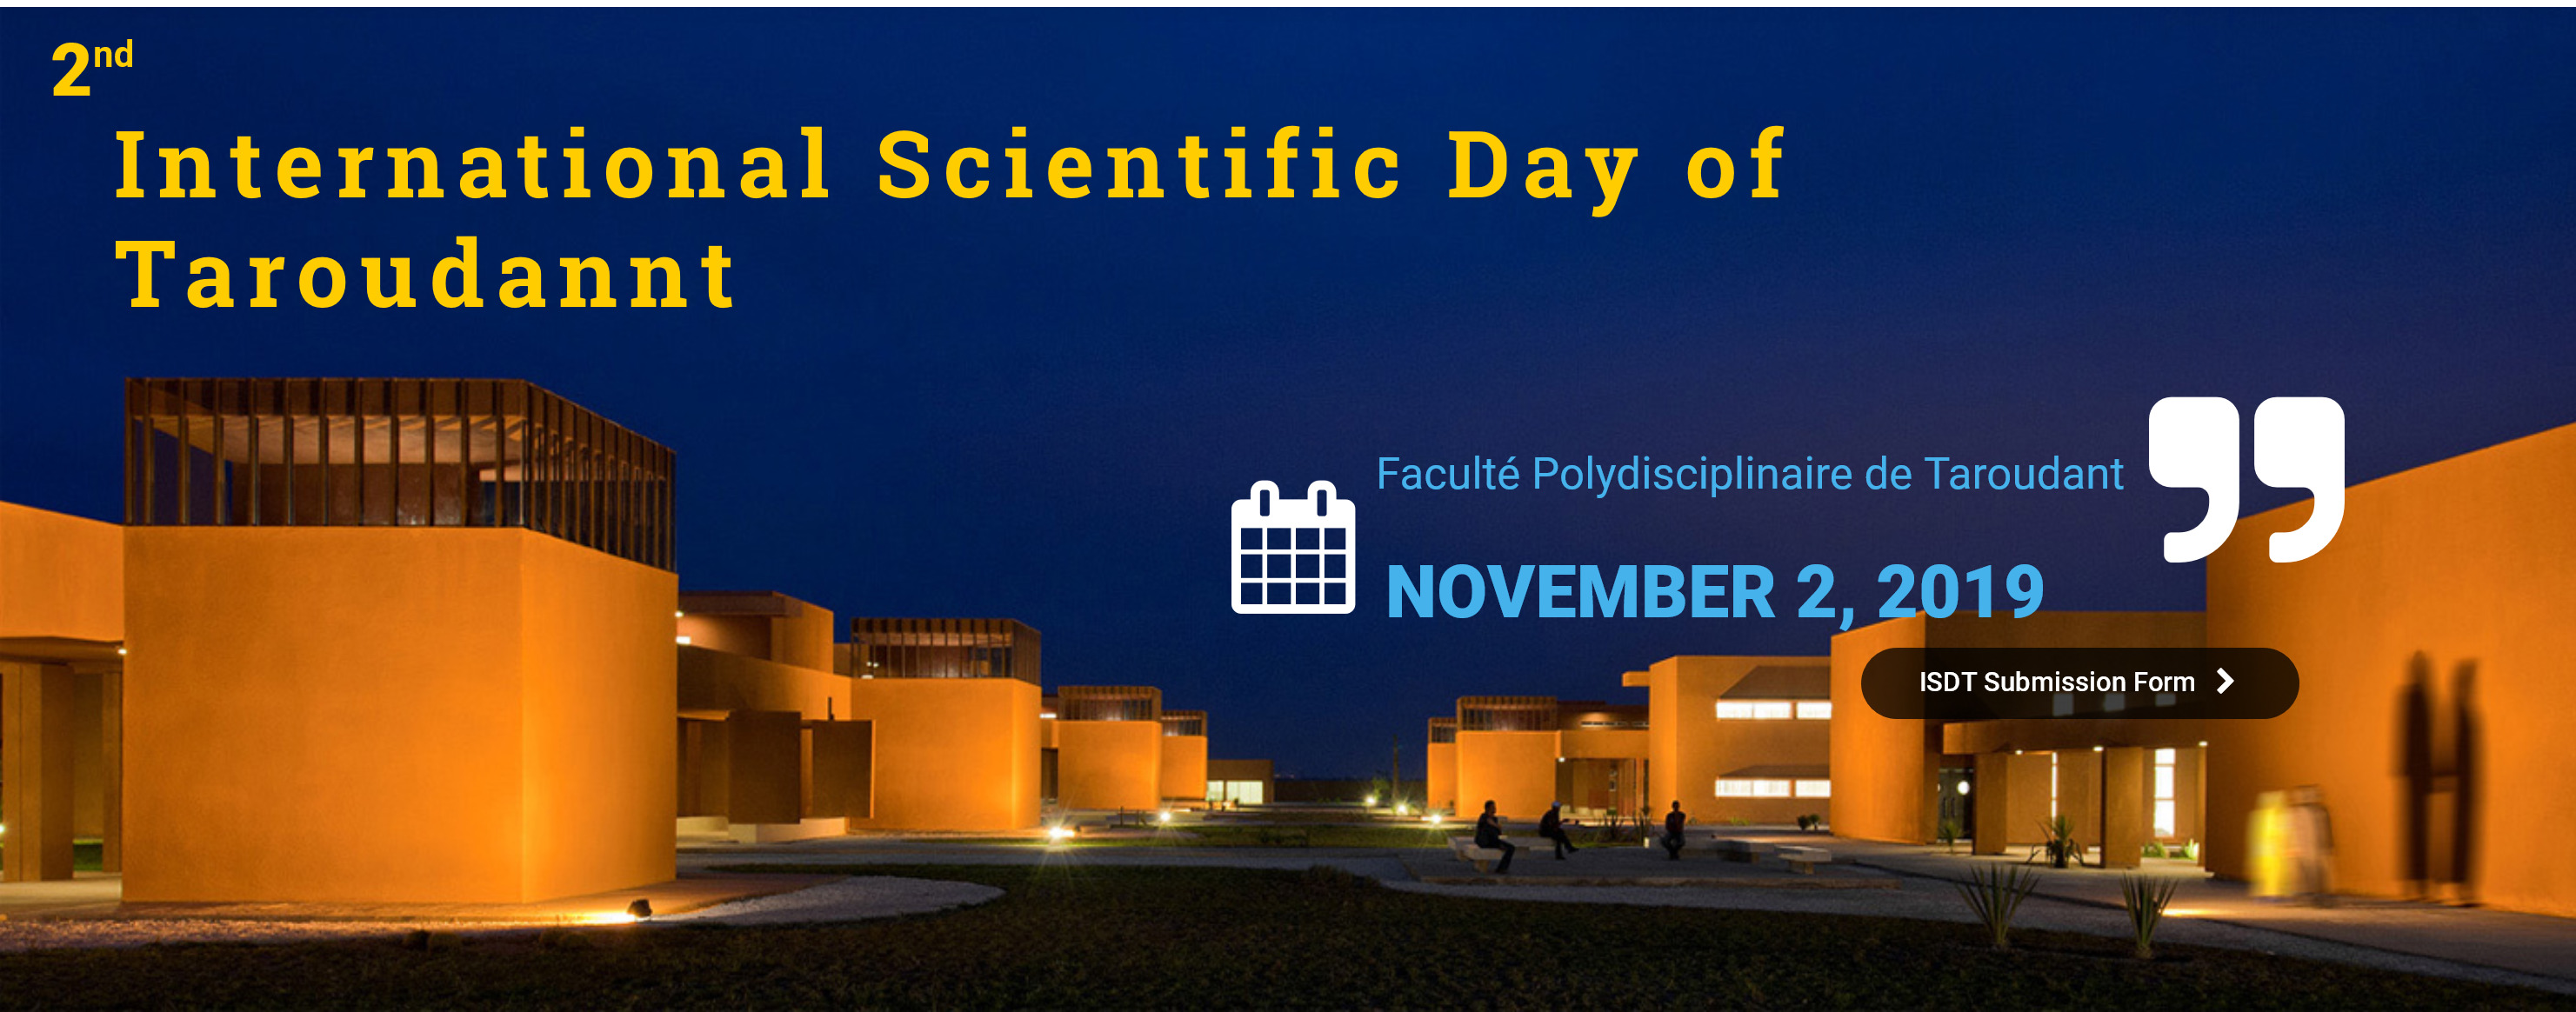 2nd International Scientific Day of Taroudannt